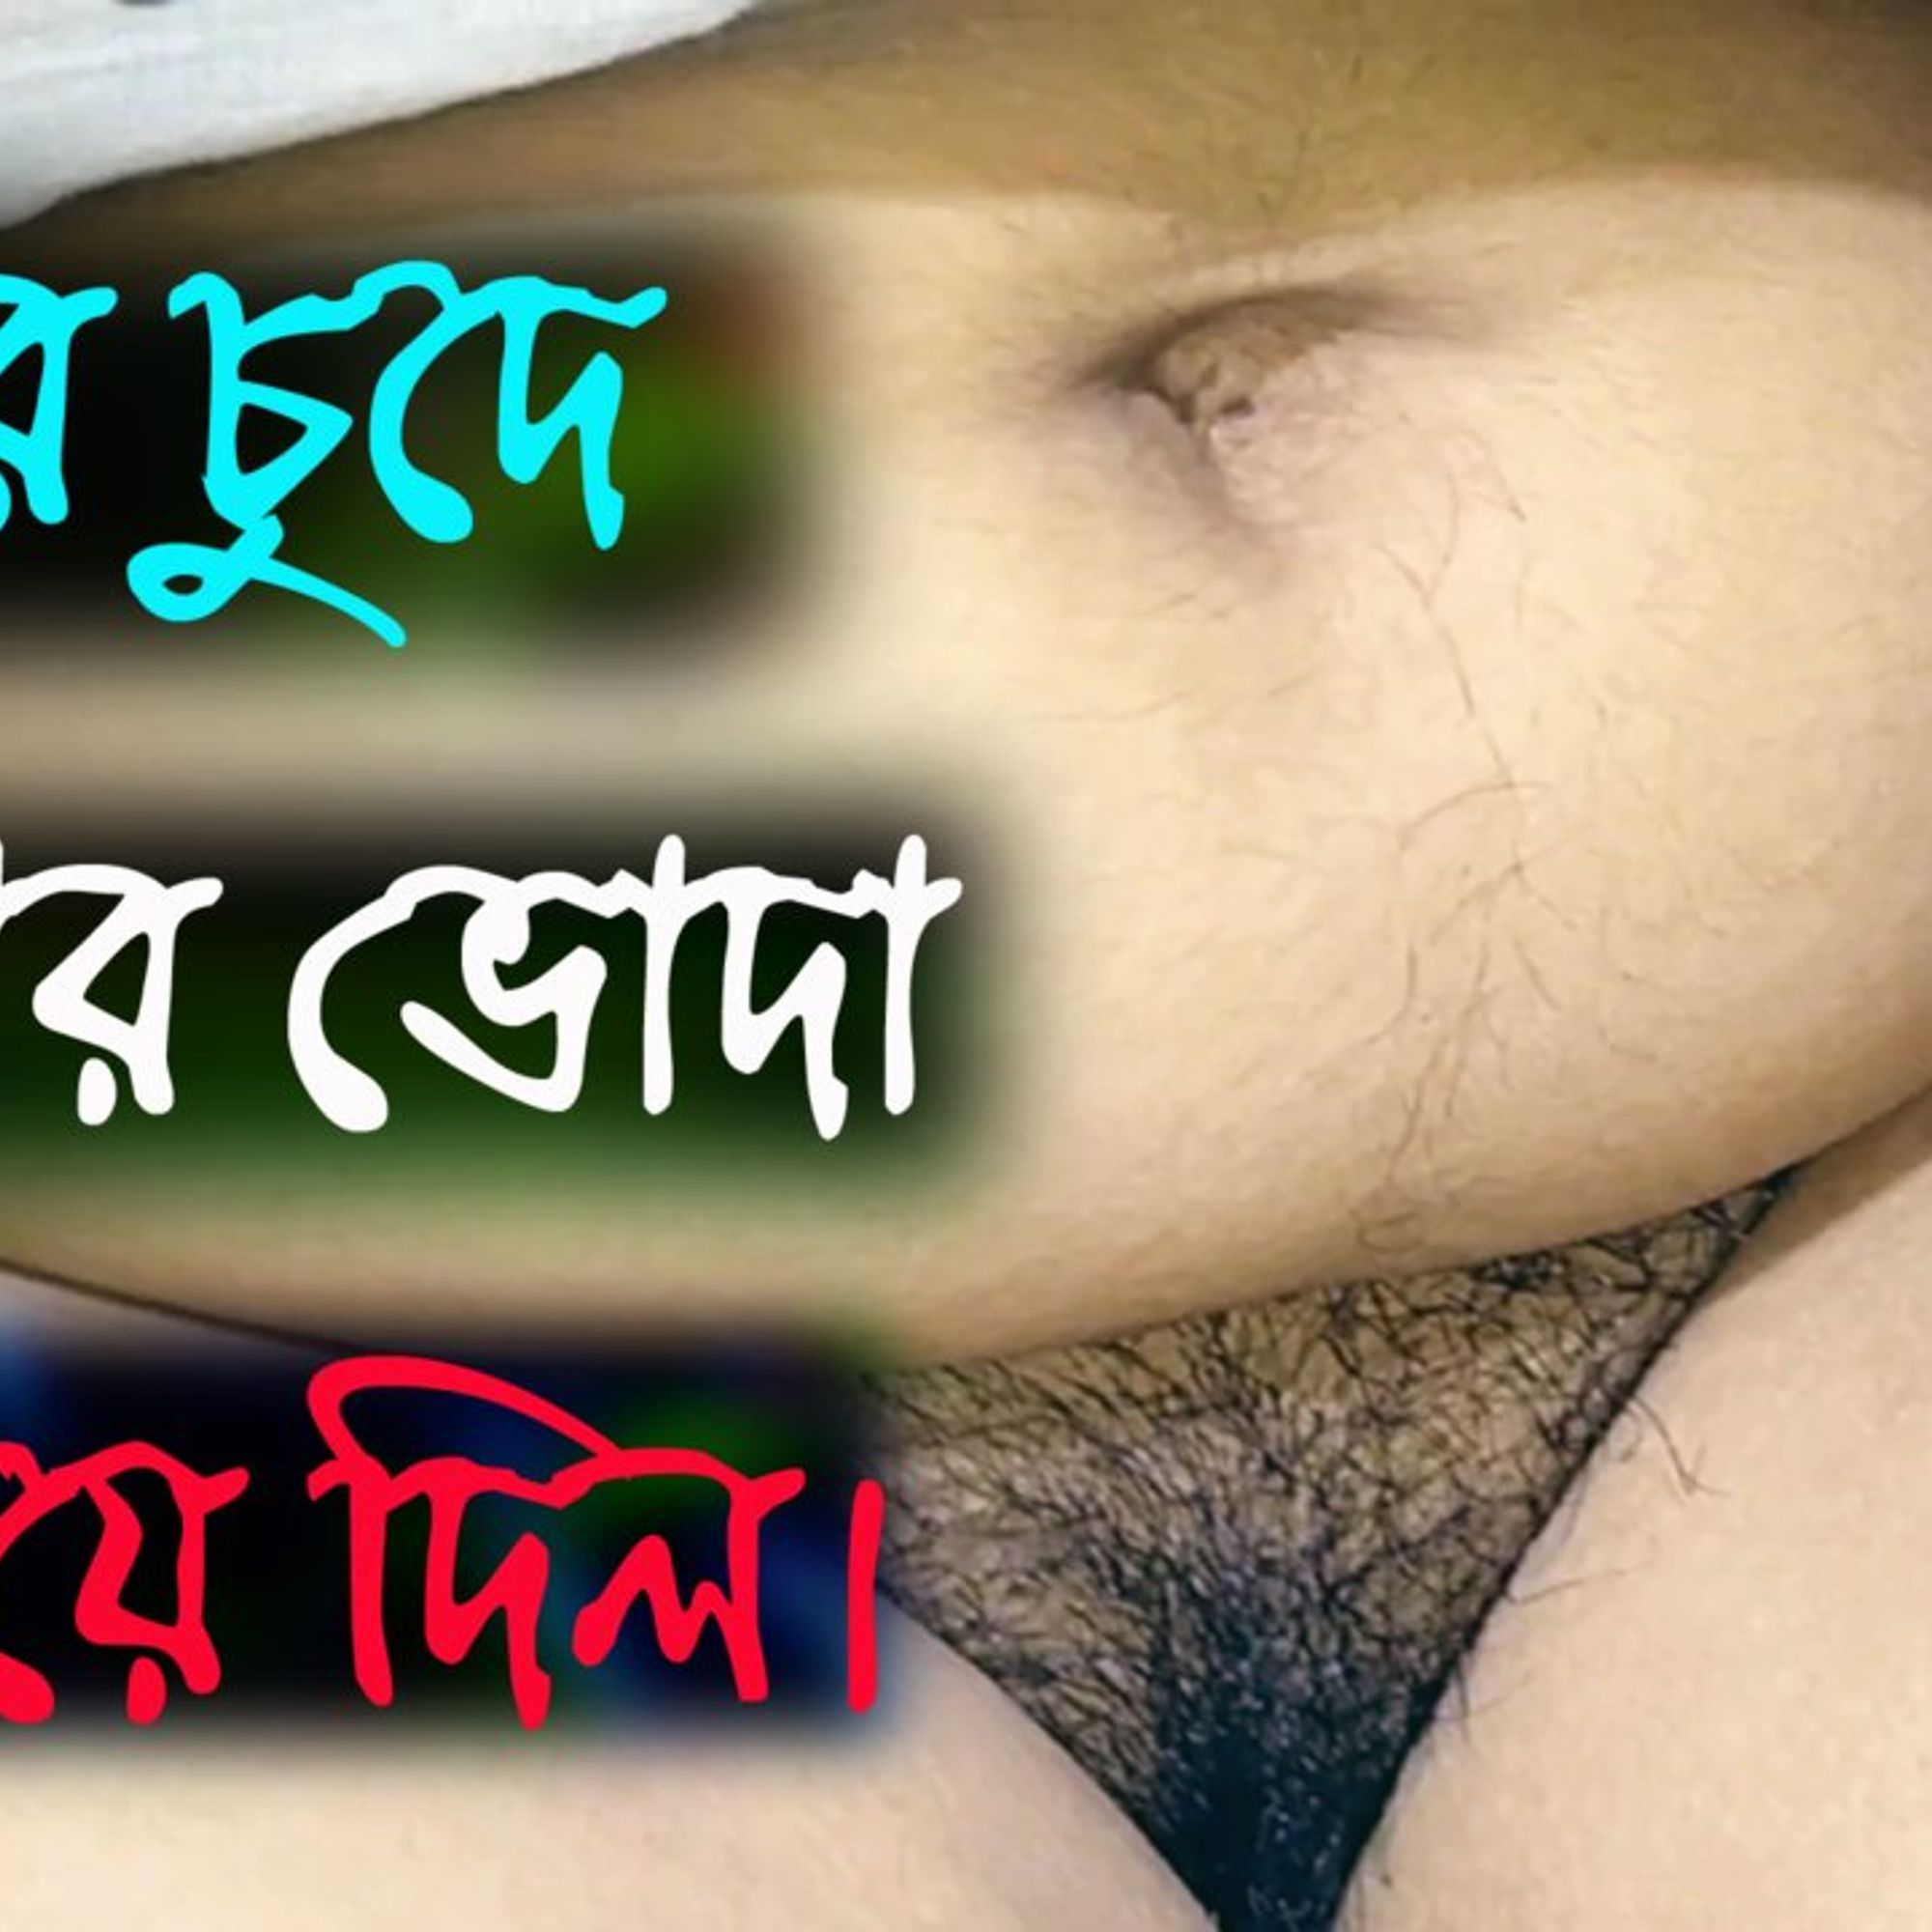 Audio sex bengali